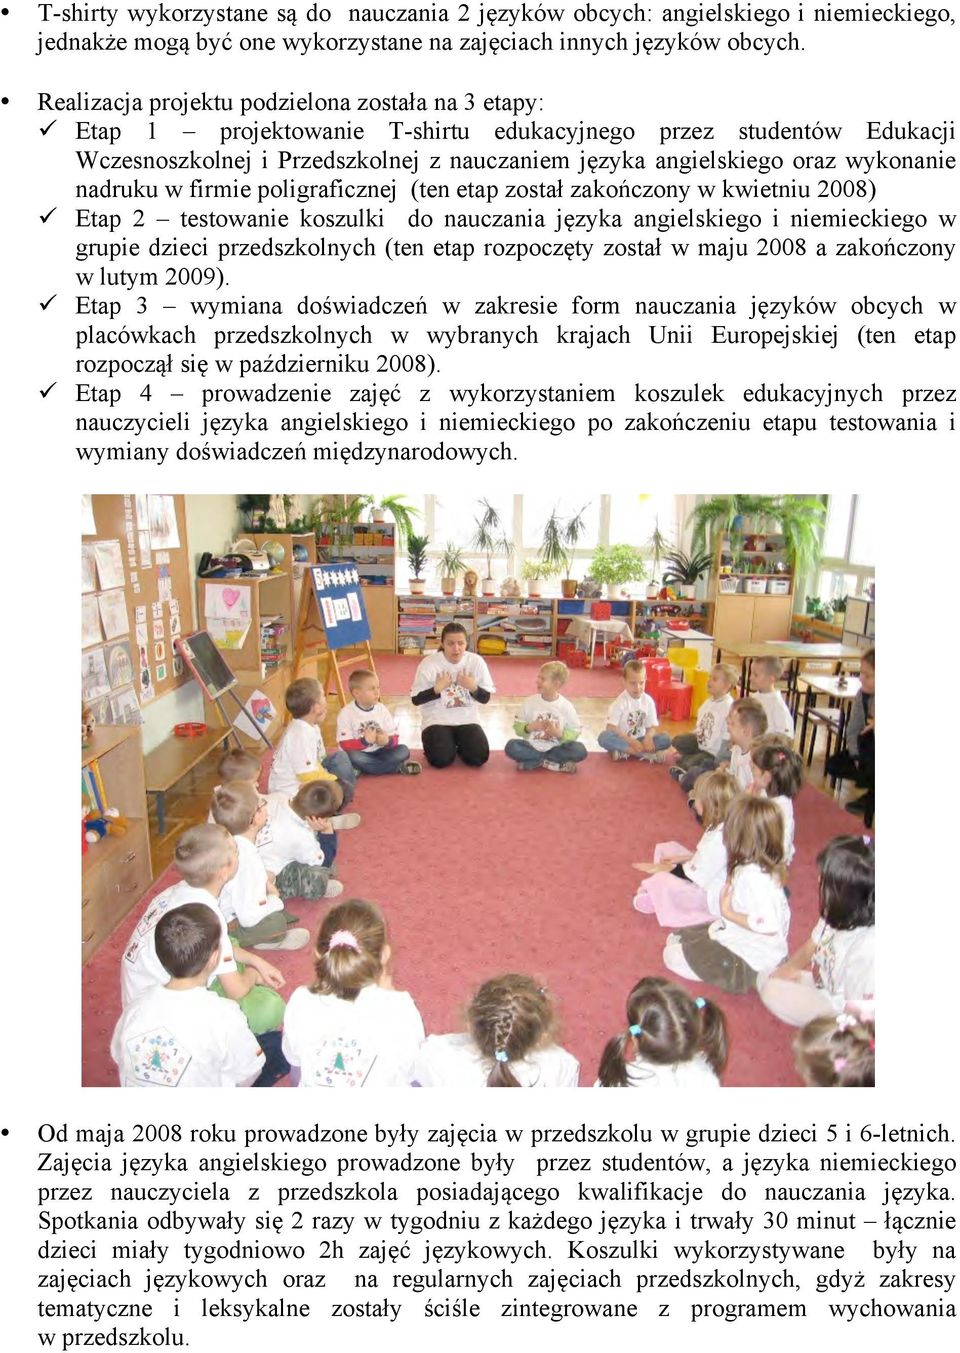 wykonanie nadruku w firmie poligraficznej (ten etap został zakończony w kwietniu 2008) ü Etap 2 testowanie koszulki do nauczania języka angielskiego i niemieckiego w grupie dzieci przedszkolnych (ten